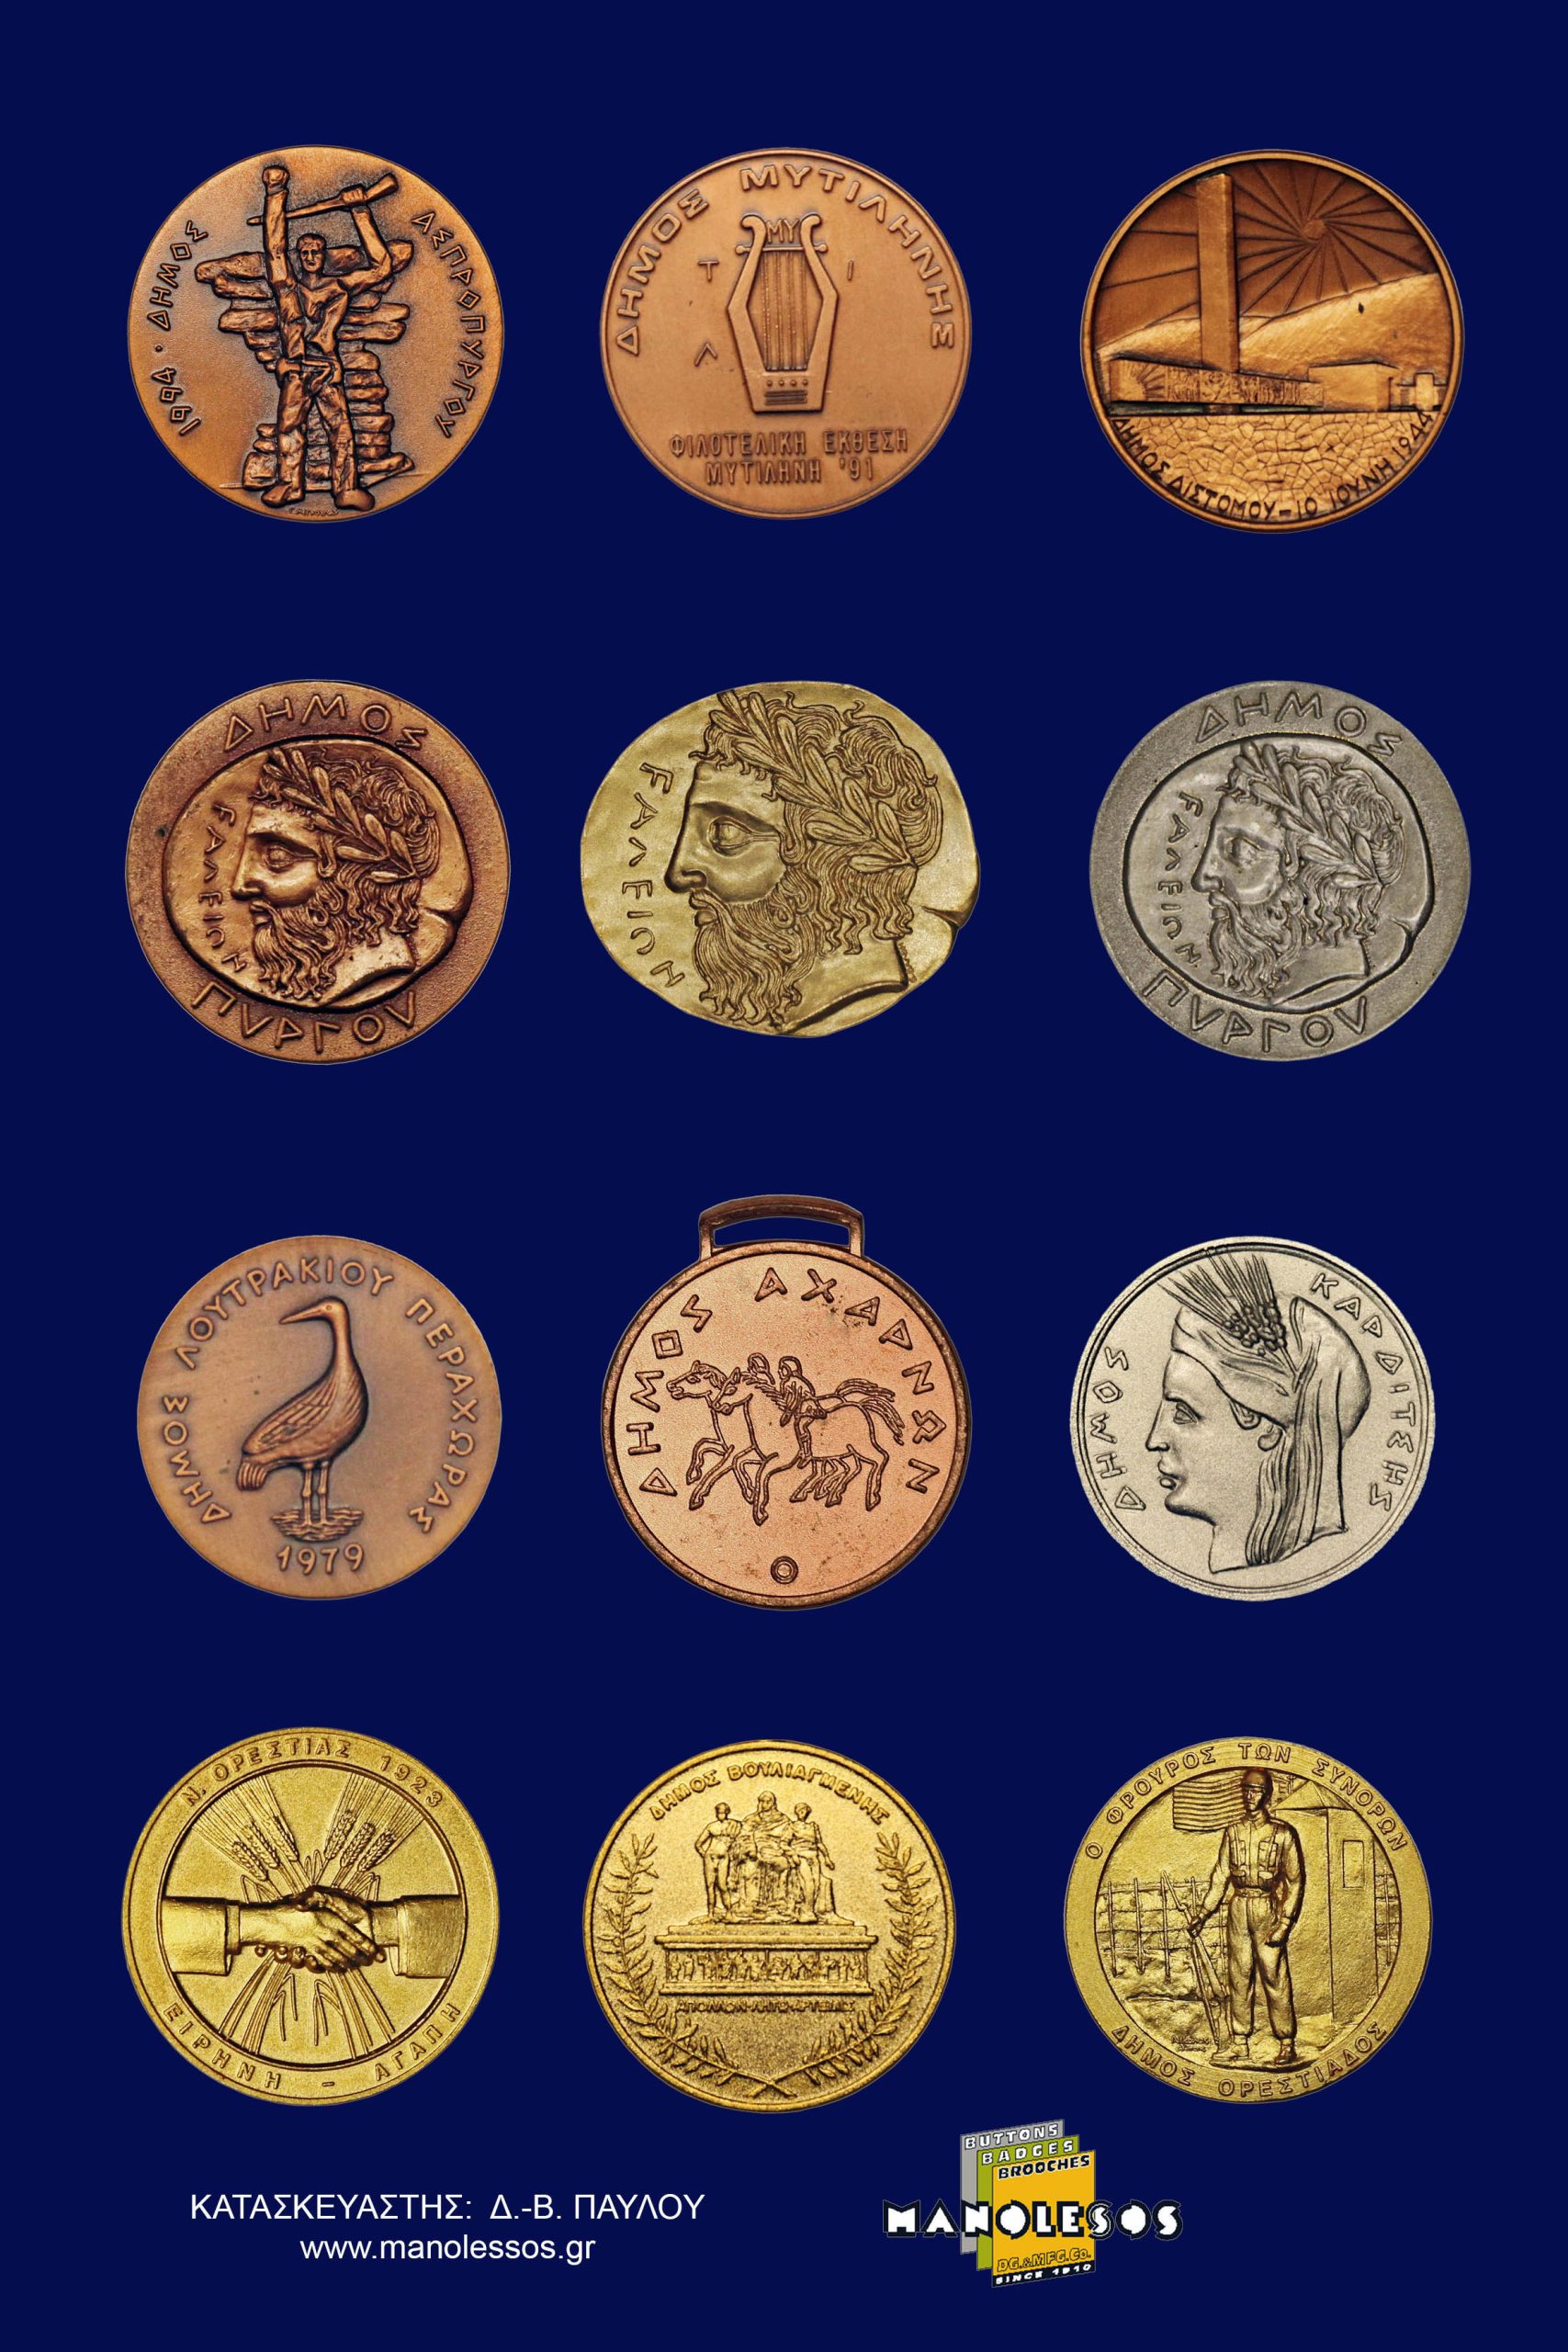 Αναμνηστικά μετάλλια για δήμους από τη Μανωλέσος 001